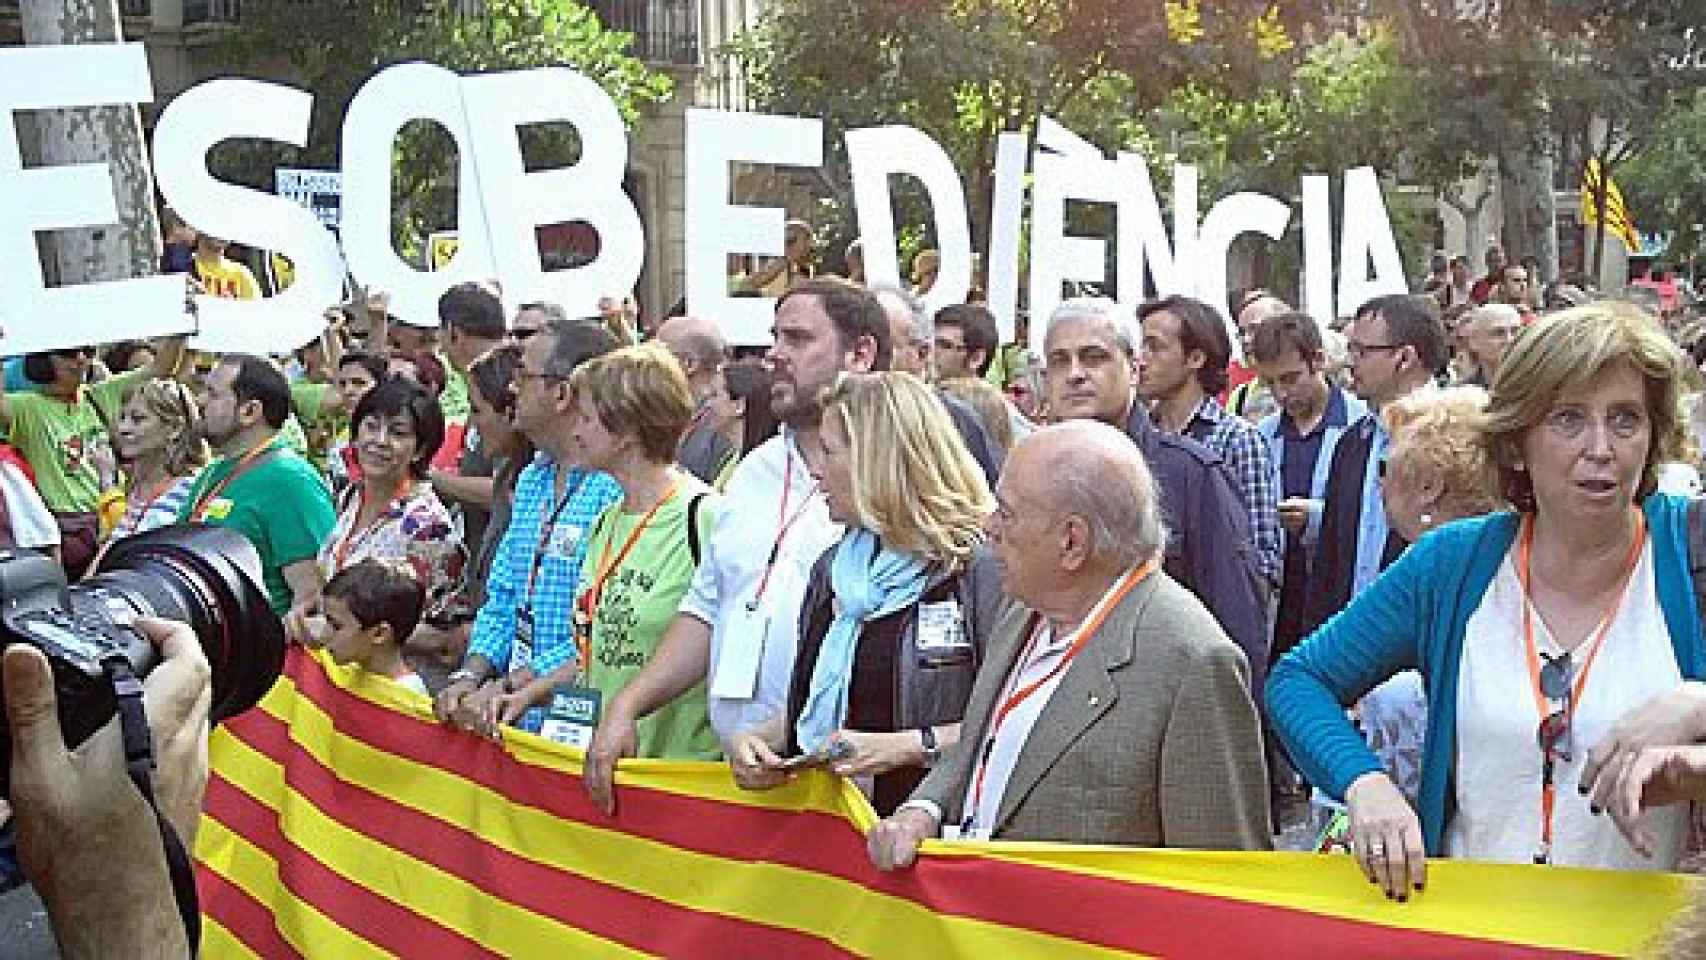 La consejera de Enseñanza de la Generalitat, Irene Rigau, junto a otros políticos, durante una manifestación contra el bilingüismo escolar celebrada en junio de 2014 en Barcelona